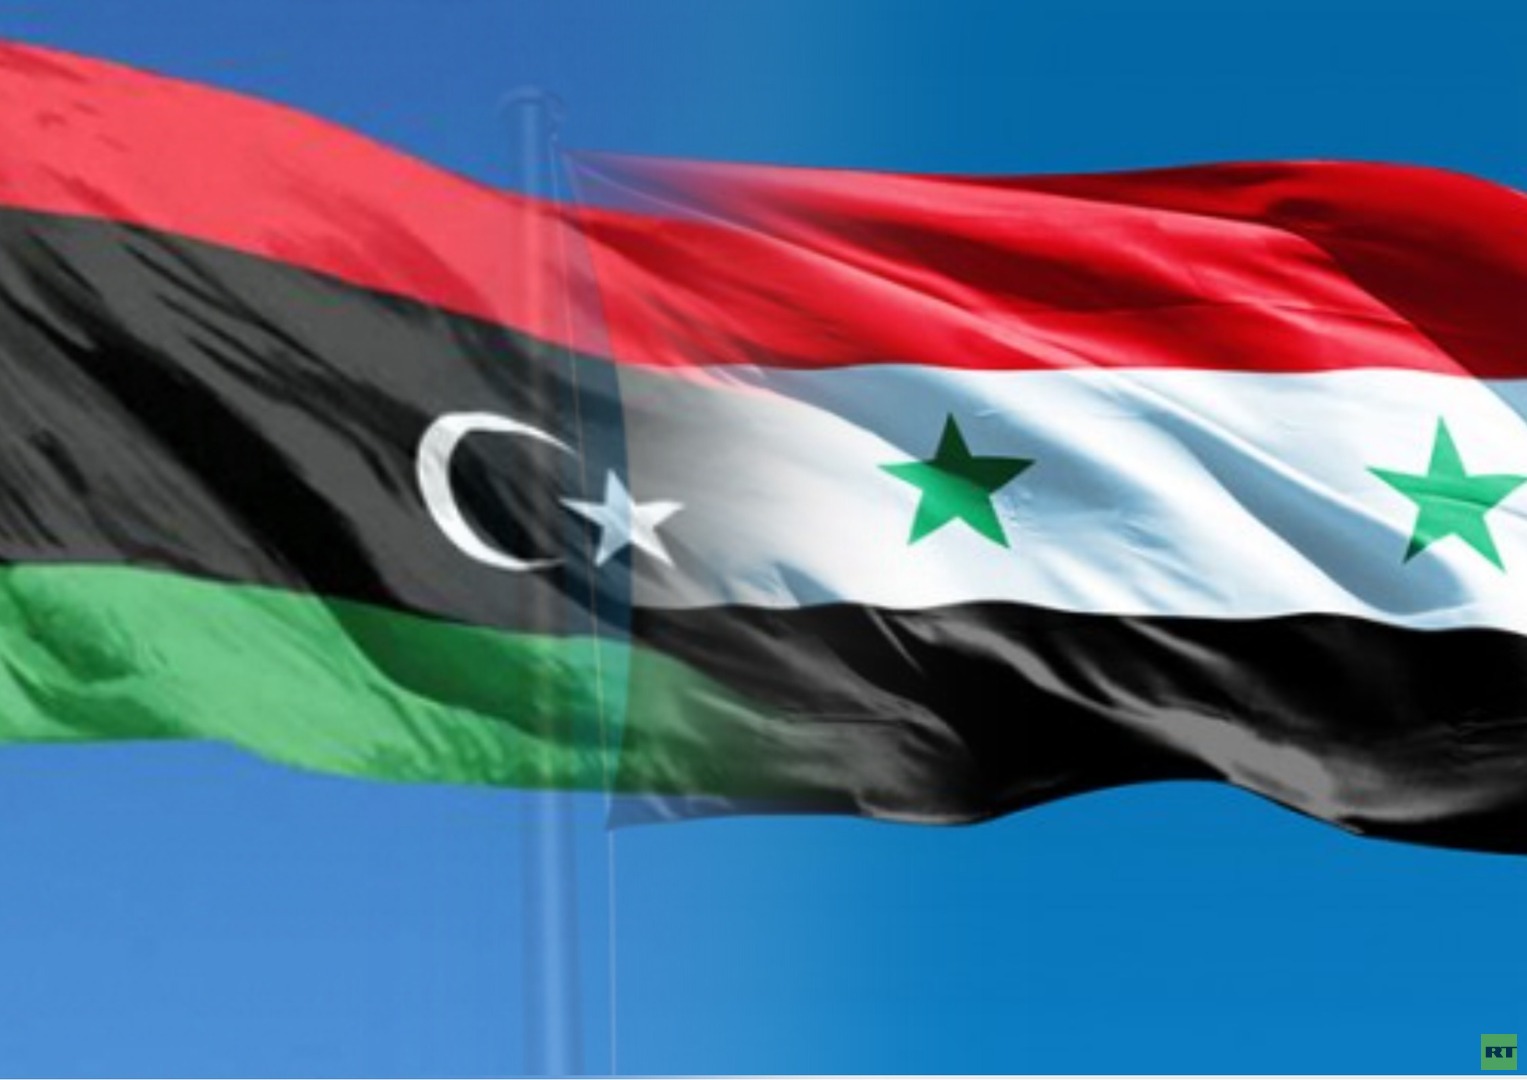 تجارة غير مشروعة على حساب الشعبين السوري والليبي؟